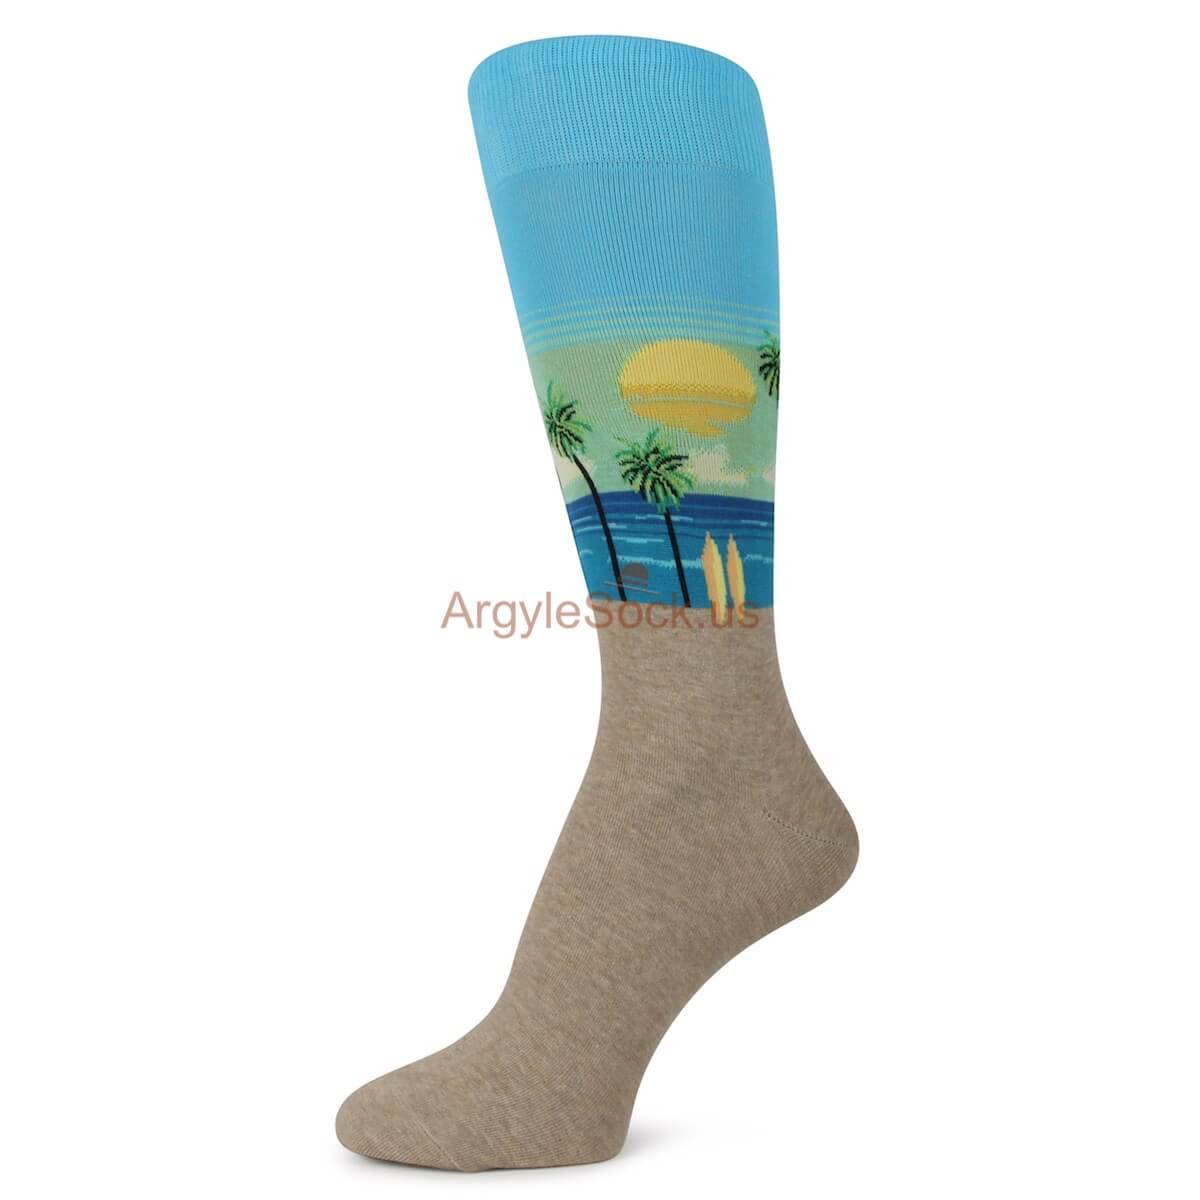 Sky Blue Mid Day on Beach Themed Socks for Men